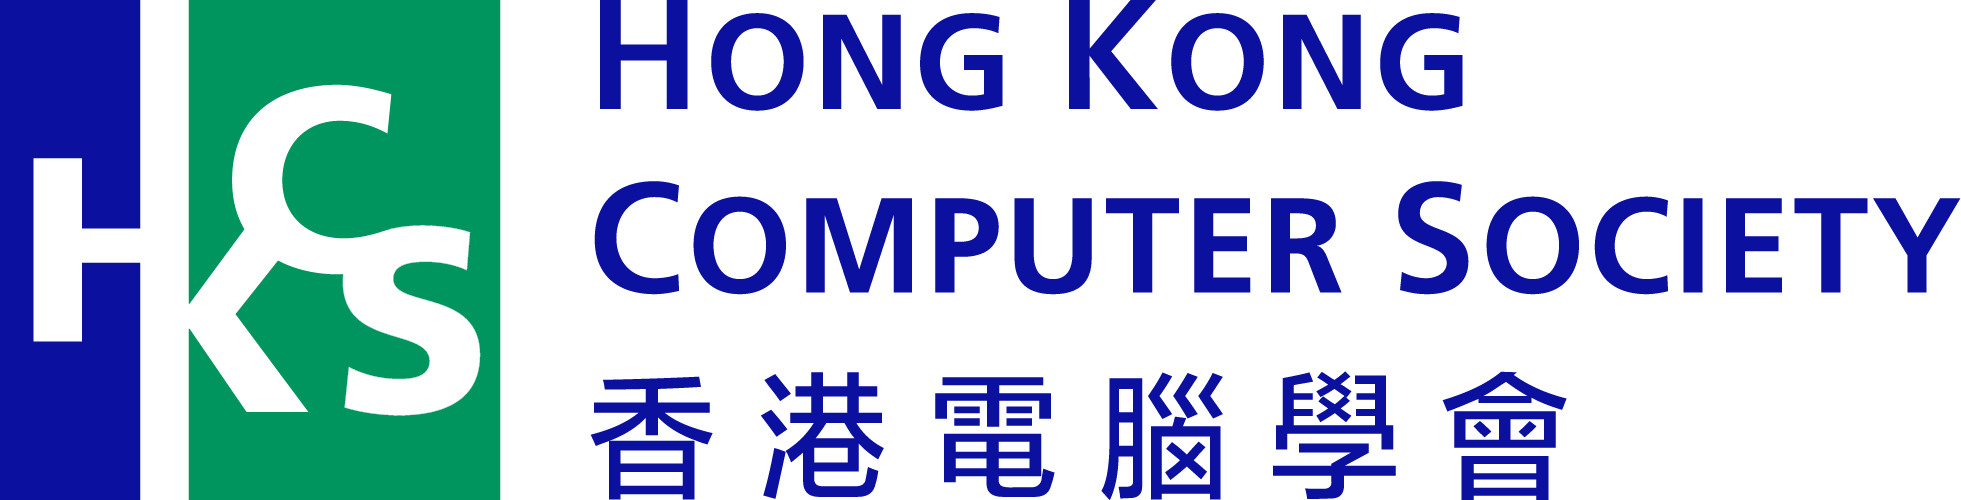 logo hkcs